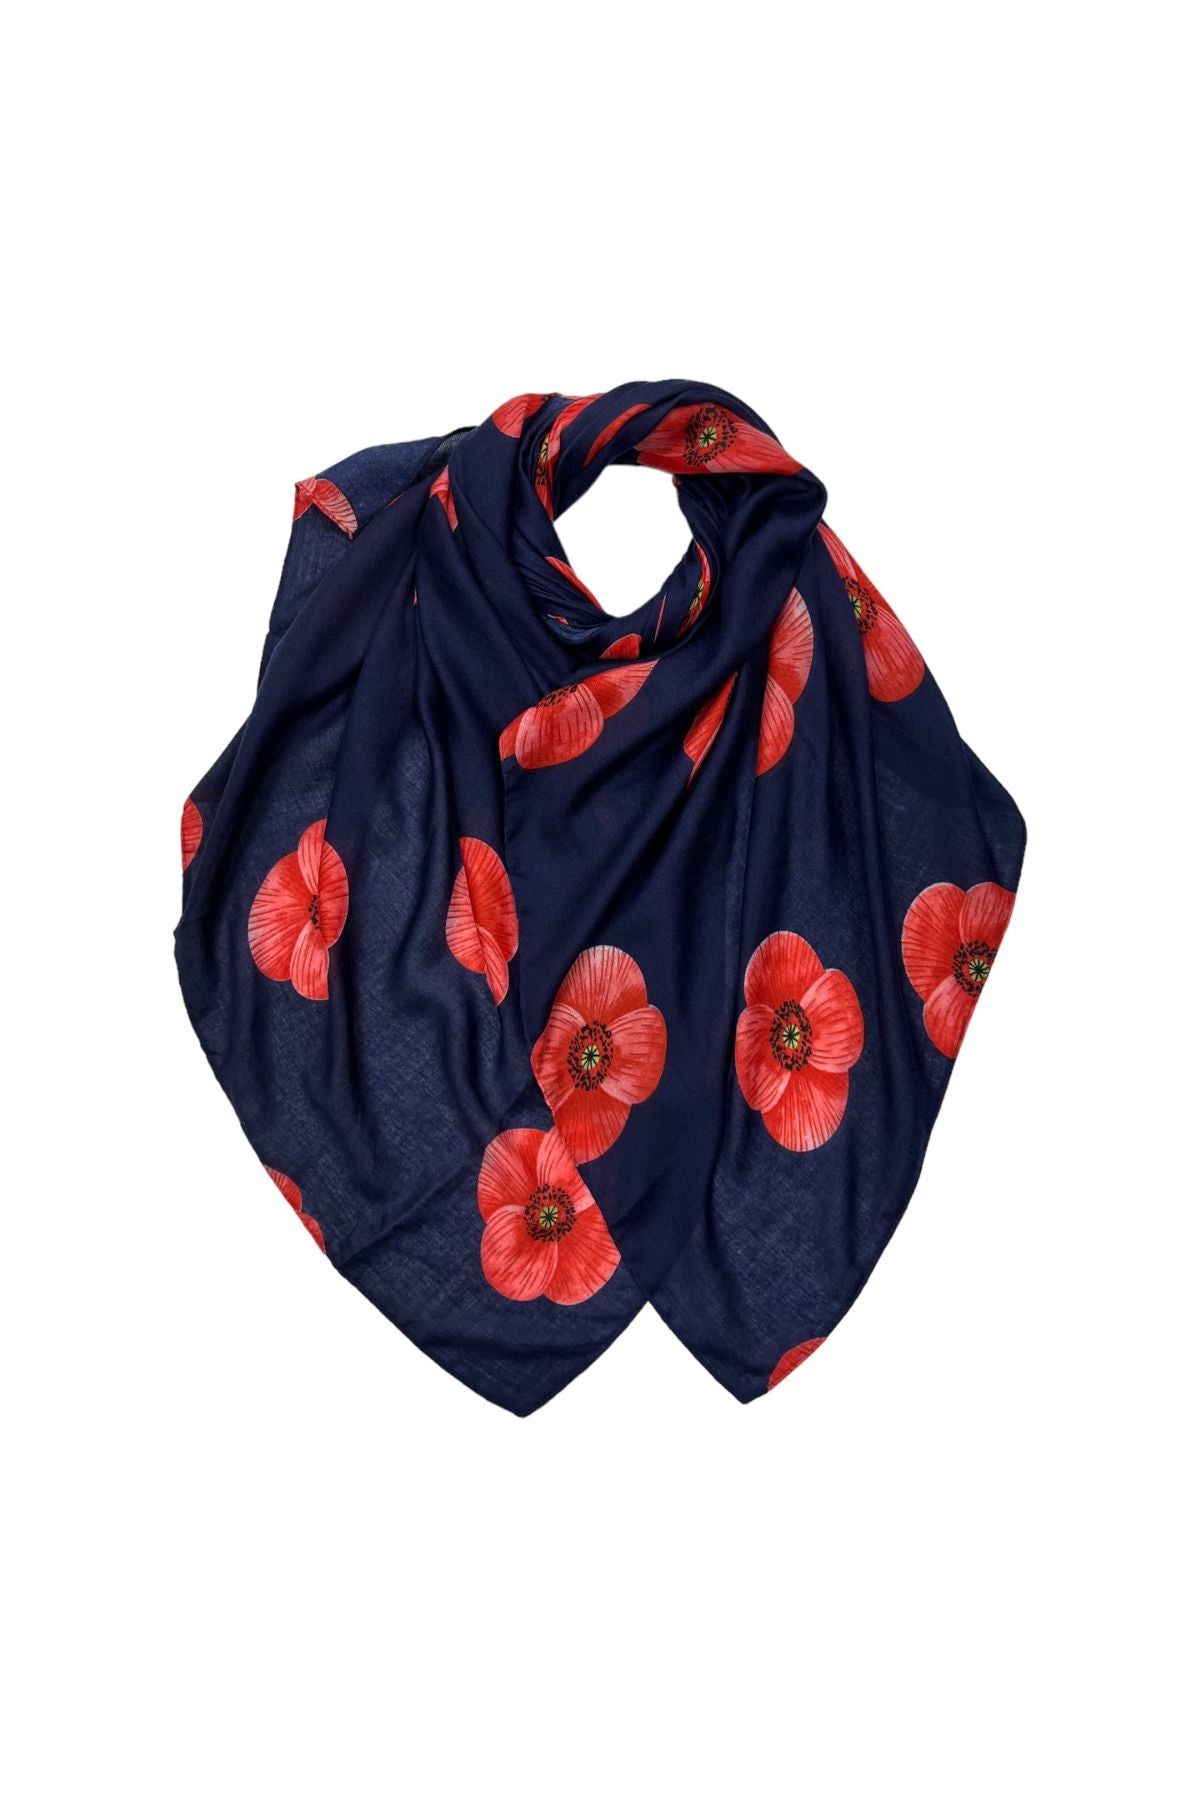 Navy poppy print scarf